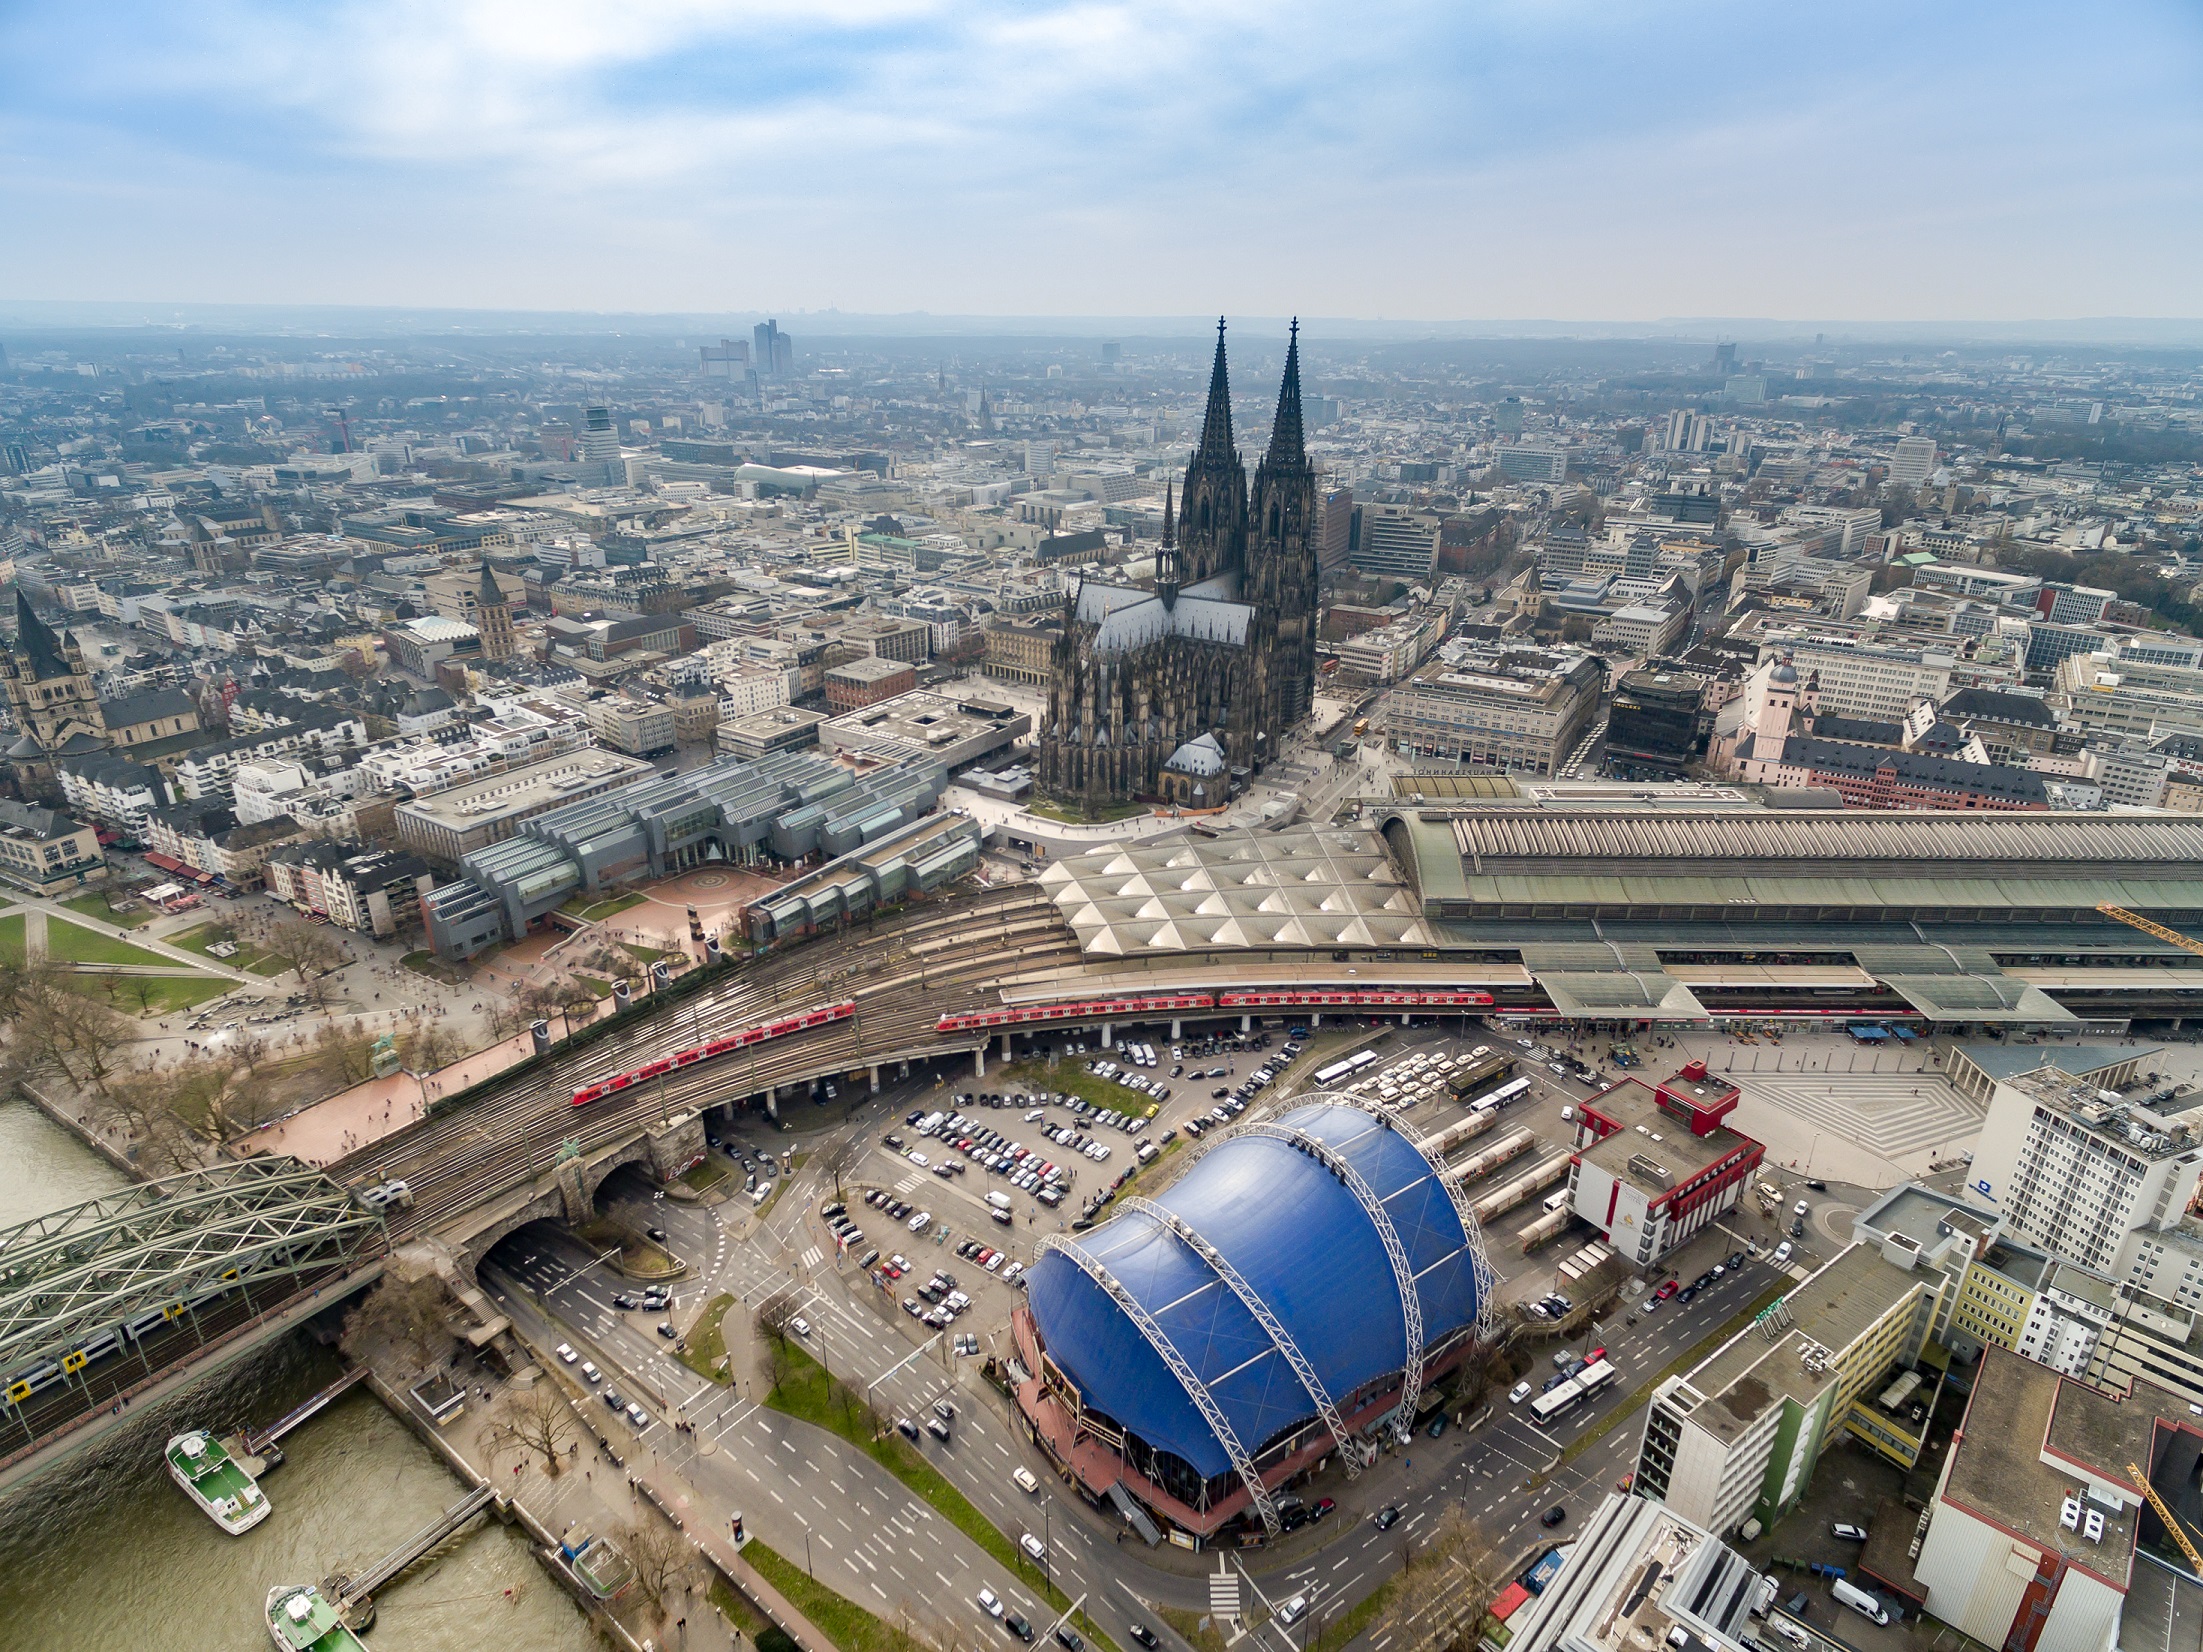 最终从东北方向西南拍摄的科隆大教堂,其中图中的车站为科隆中央车站